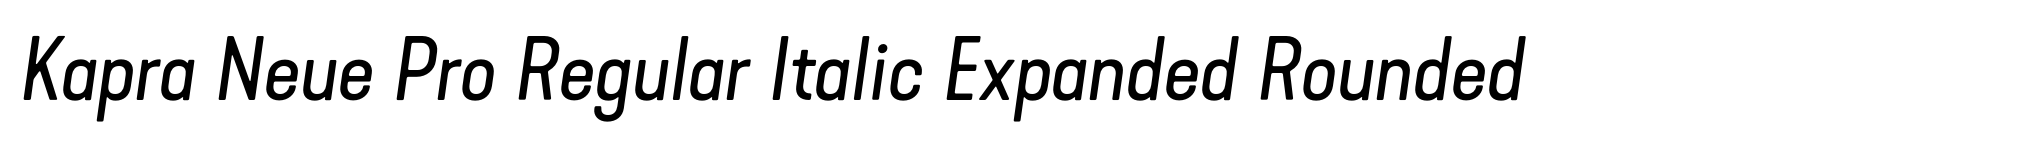 Kapra Neue Pro Regular Italic Expanded Rounded image